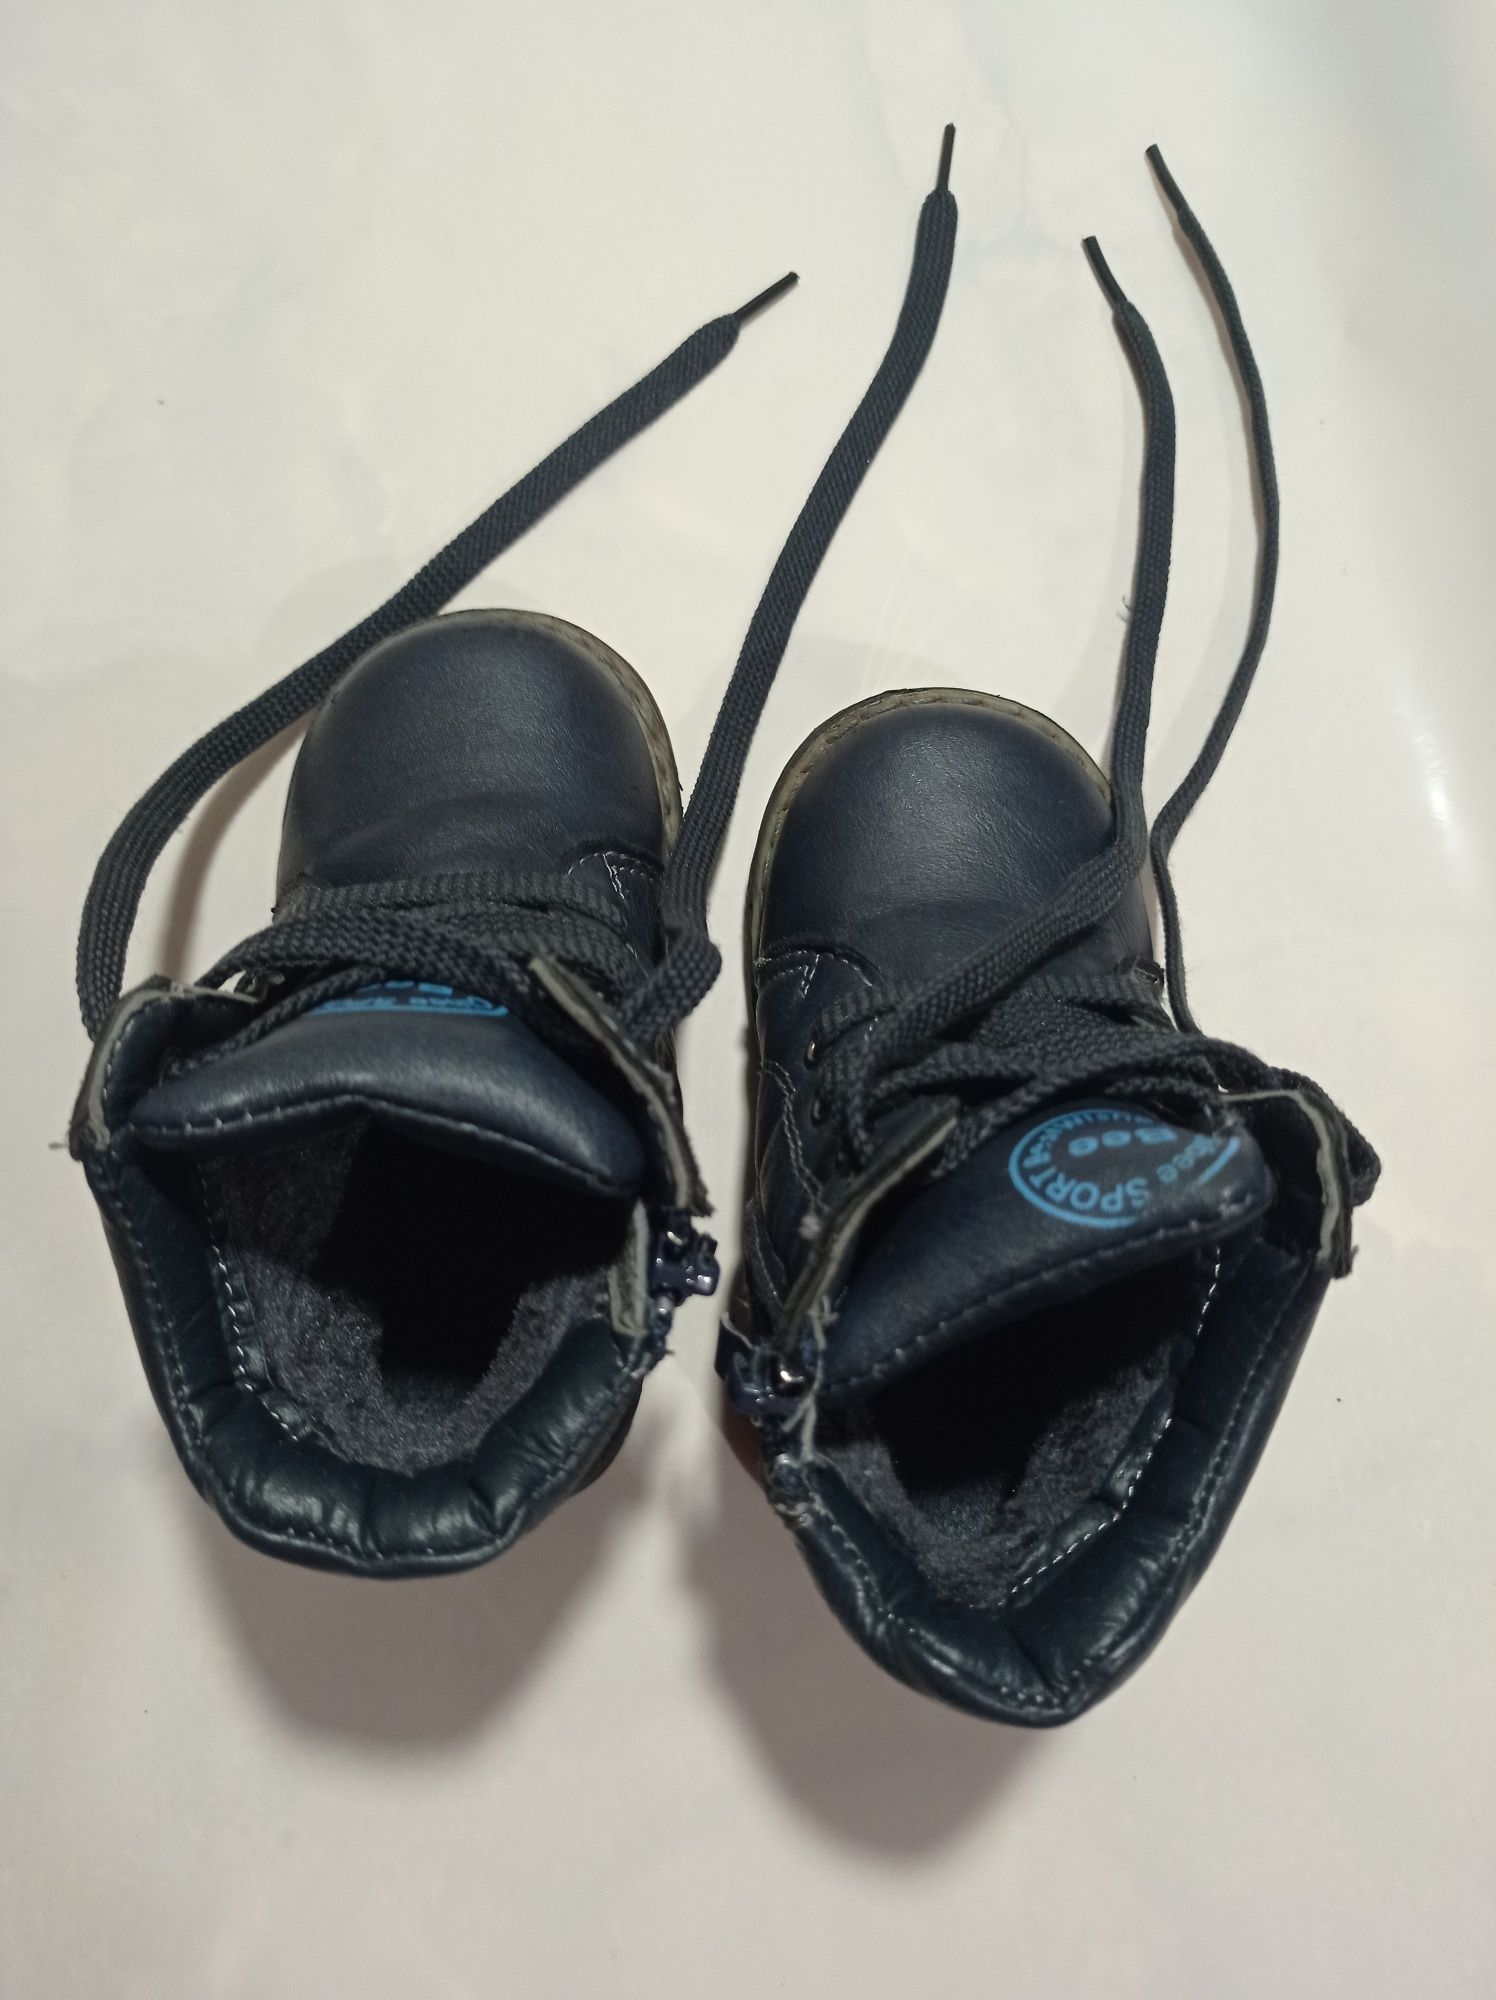 Ботинки сапожки на зиму 22 размер